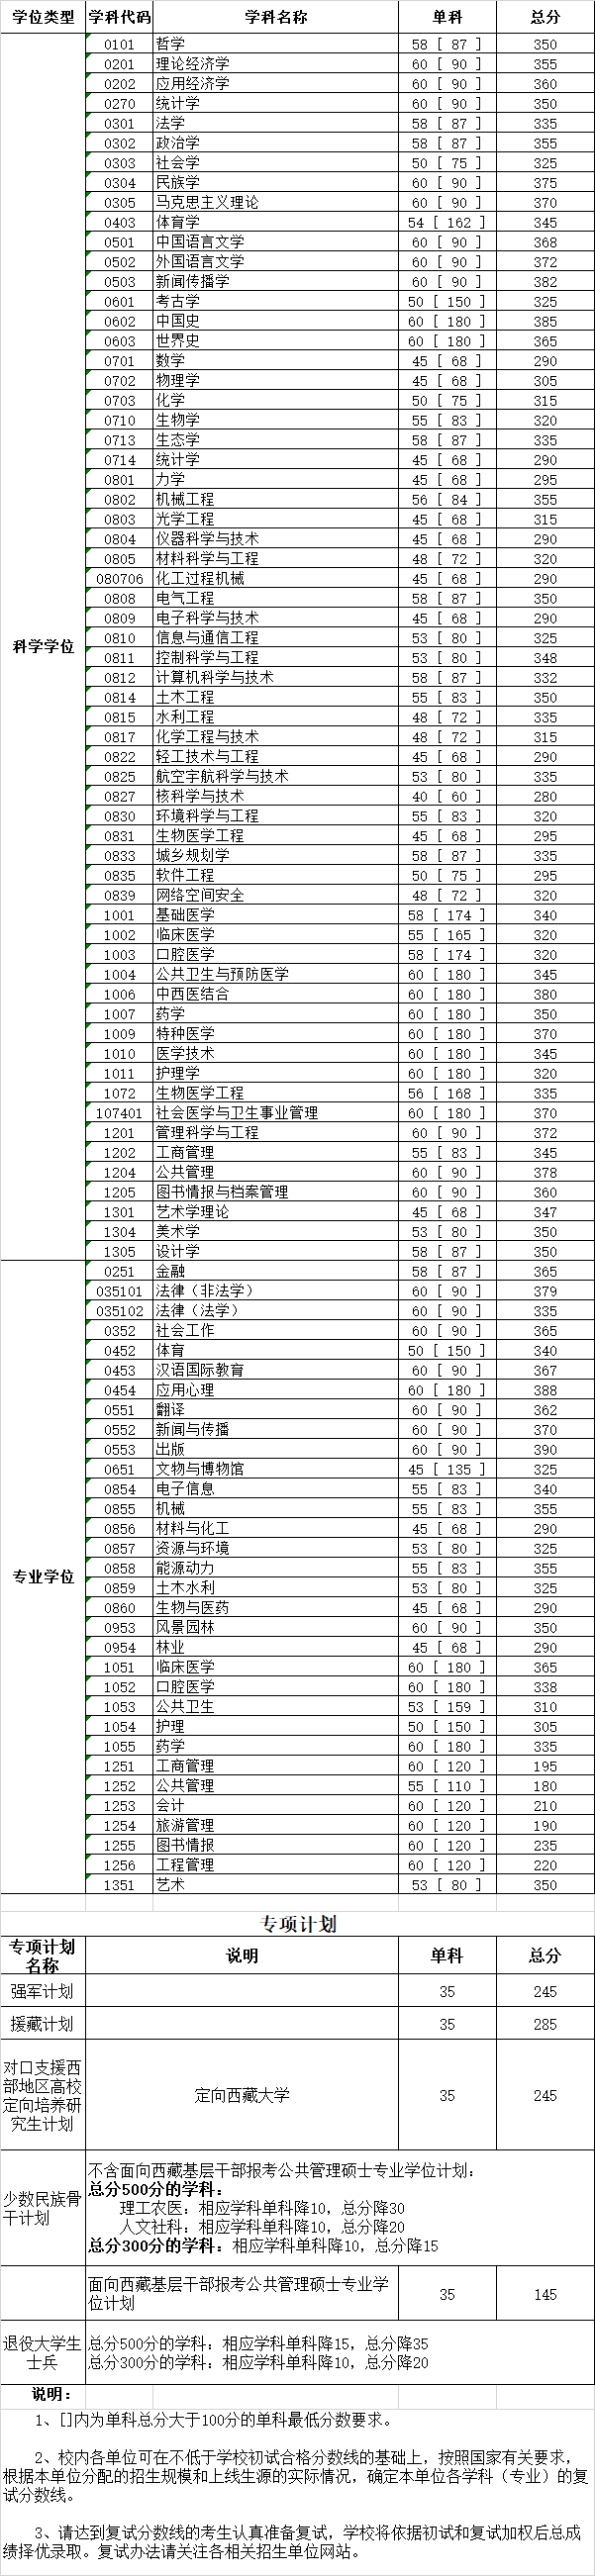 2020年四川大学考研复试分数线